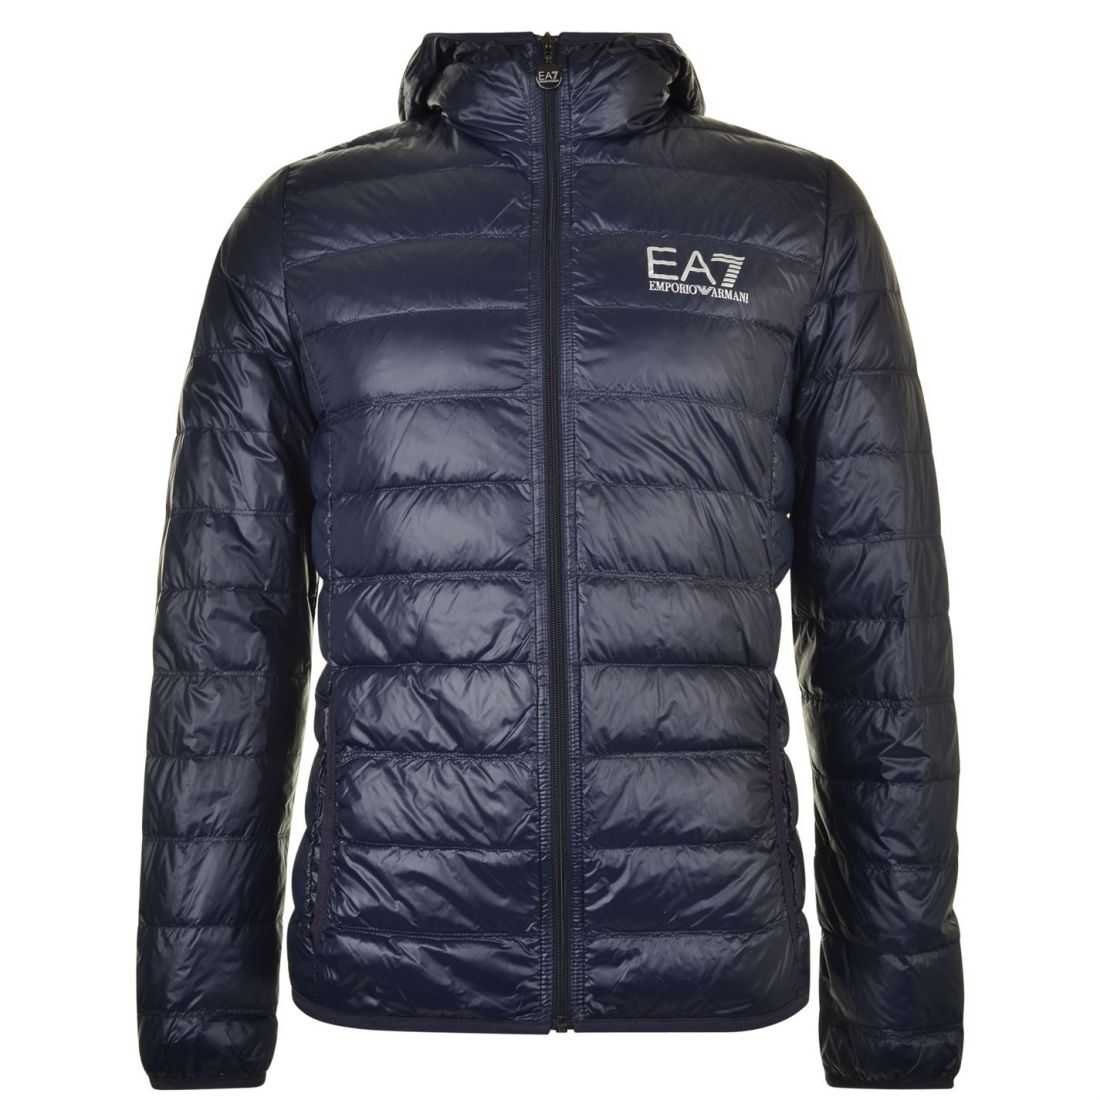 ea7 coat cheap